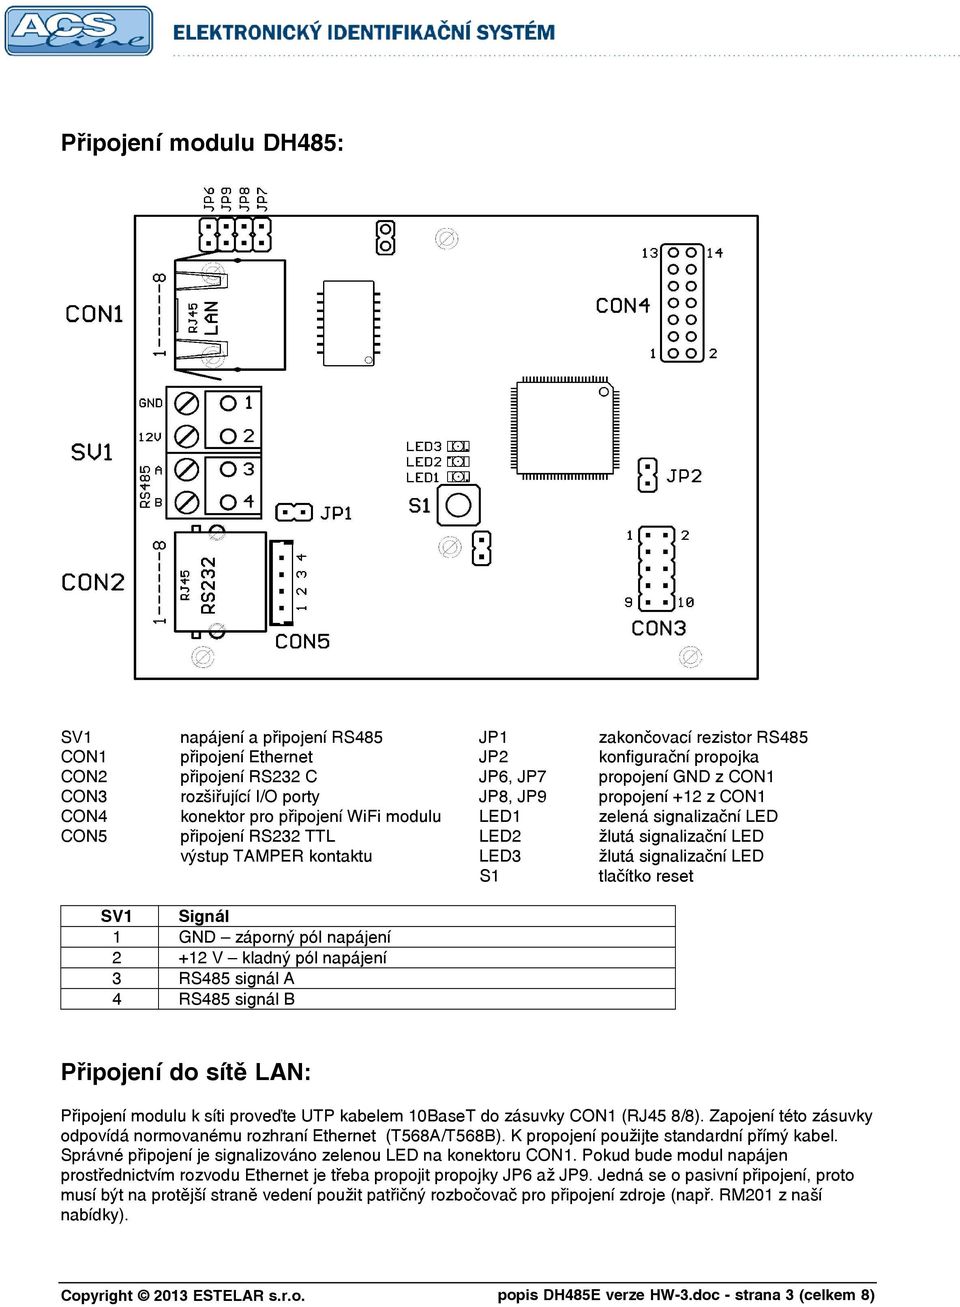 LED3 žlutá signalizační LED S1 tlačítko reset SV1 Signál 1 GND záporný pól napájení 2 +12 V kladný pól napájení 3 RS485 signál A 4 RS485 signál B Připojení do sítě LAN: Připojení modulu k síti